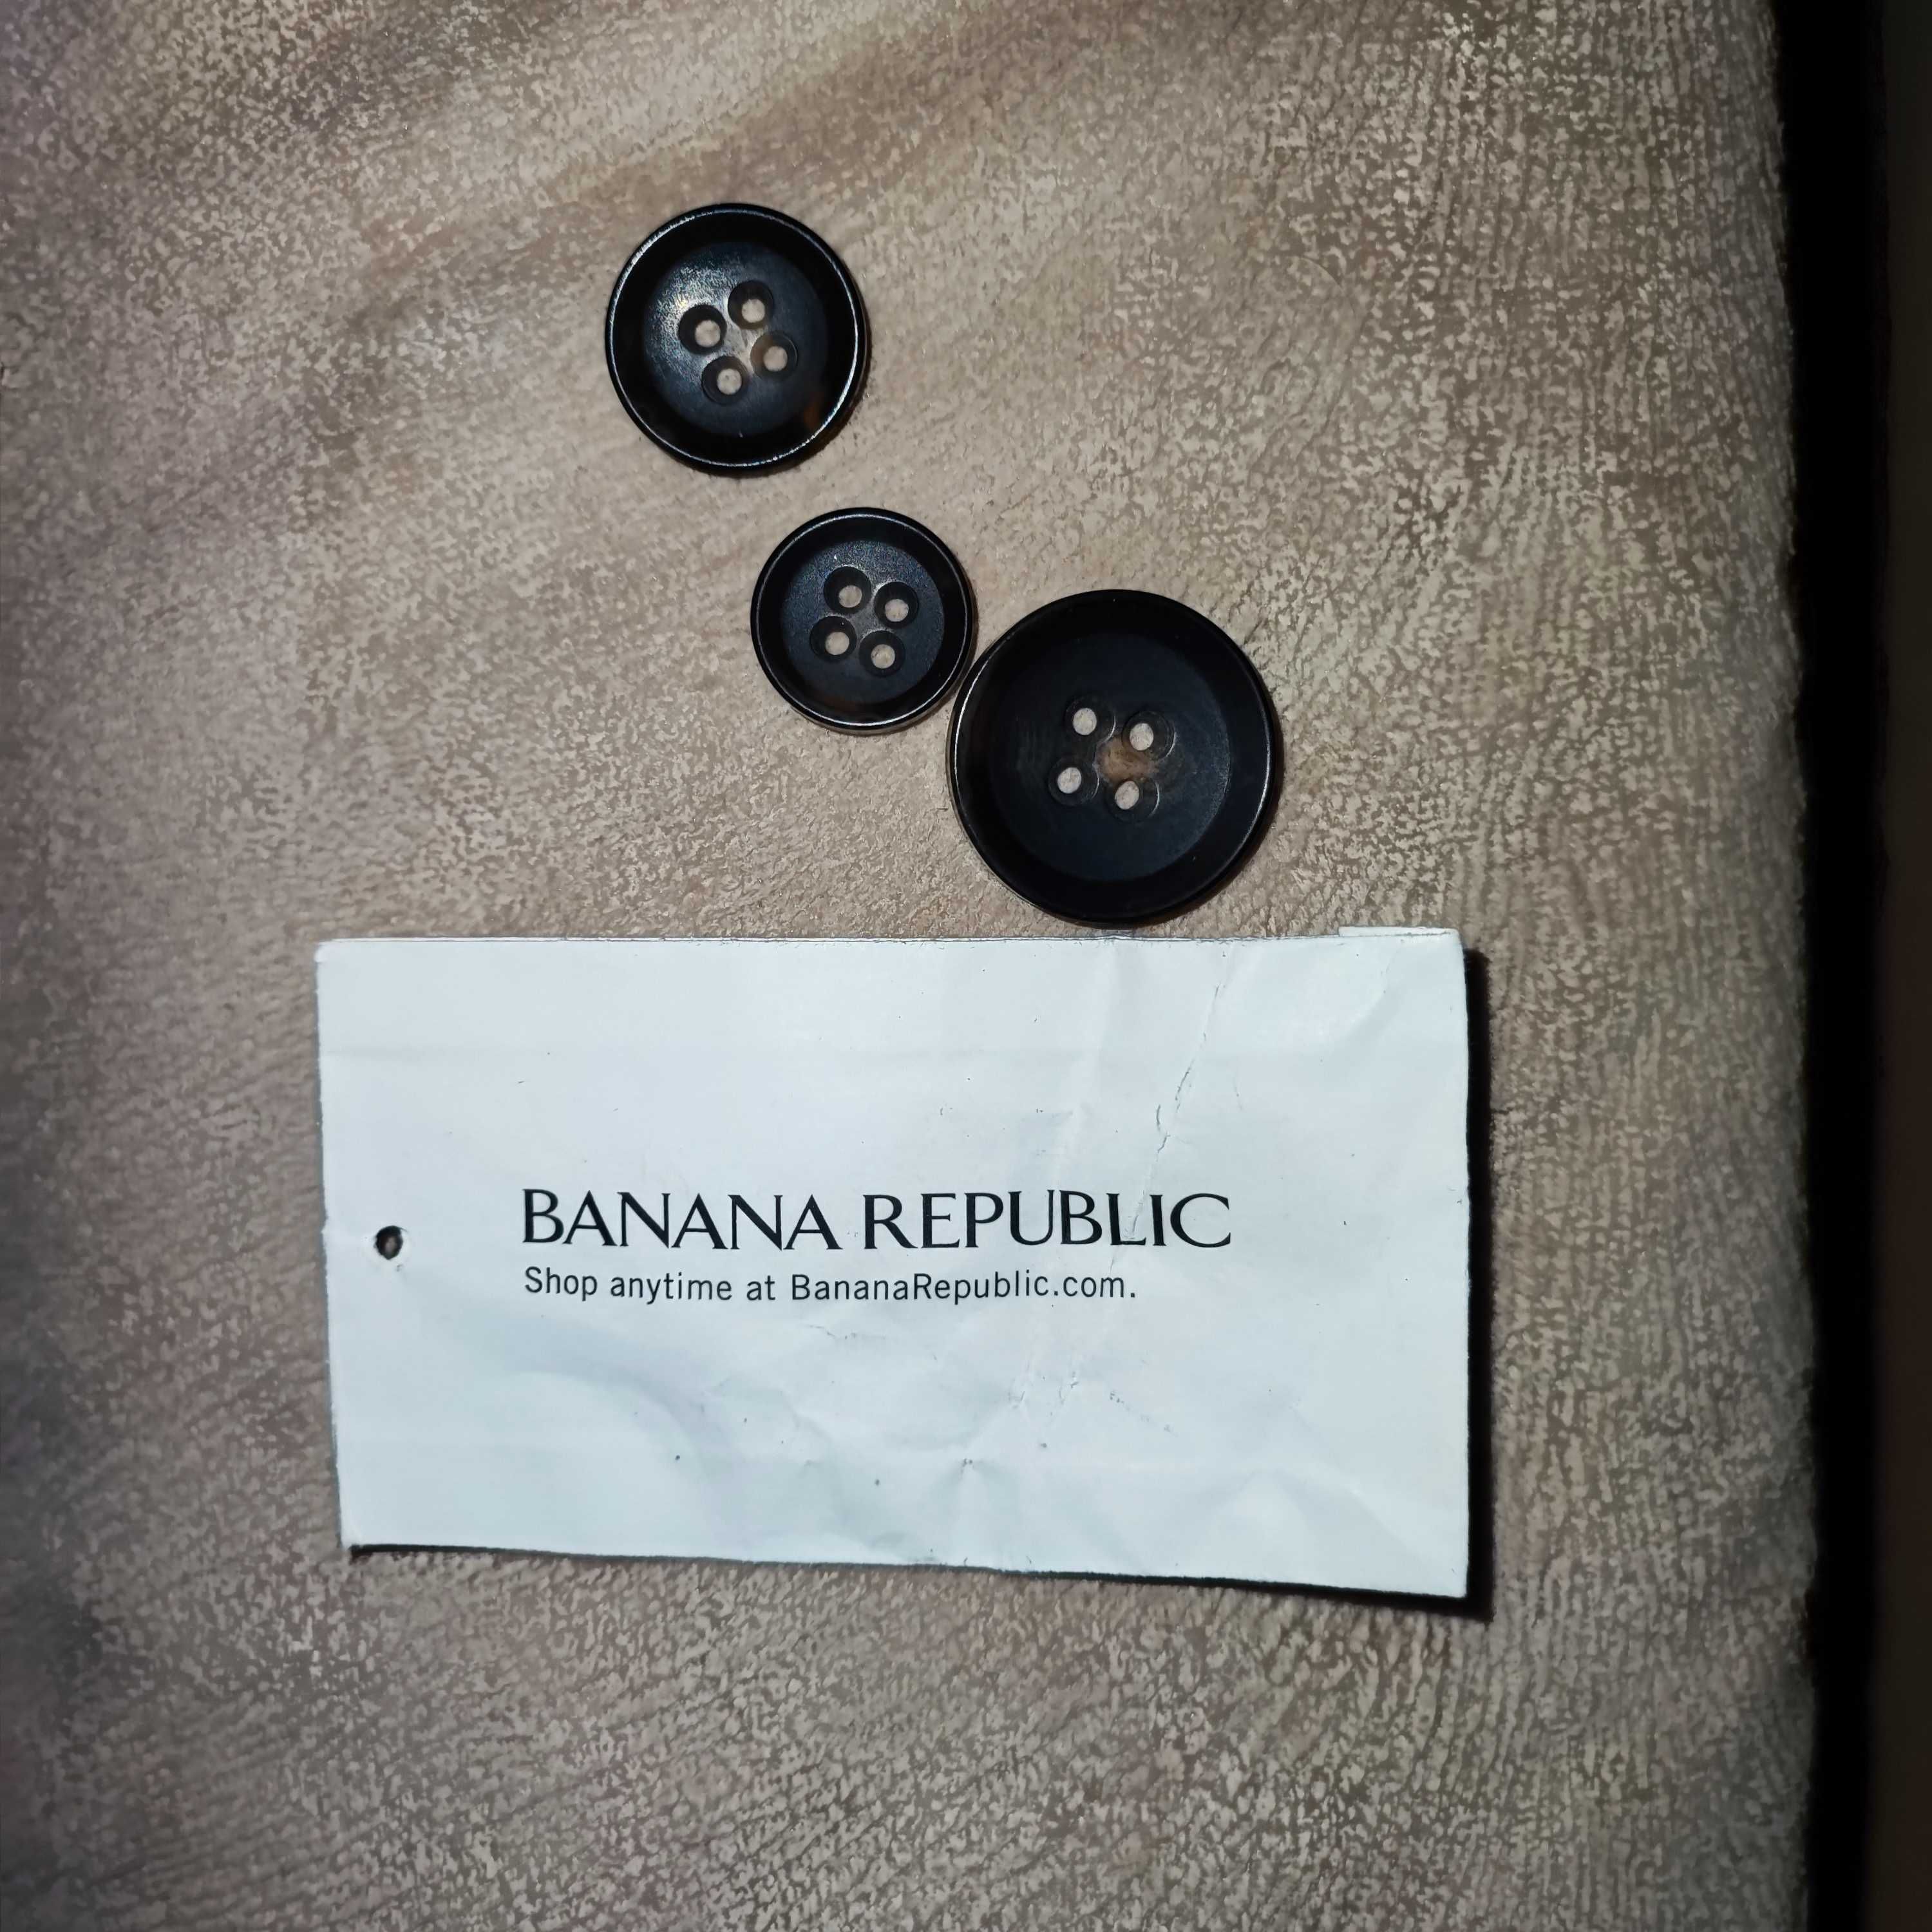 Trenci / Palton / Parpalac Banana Republic, Barbati - S mare / M